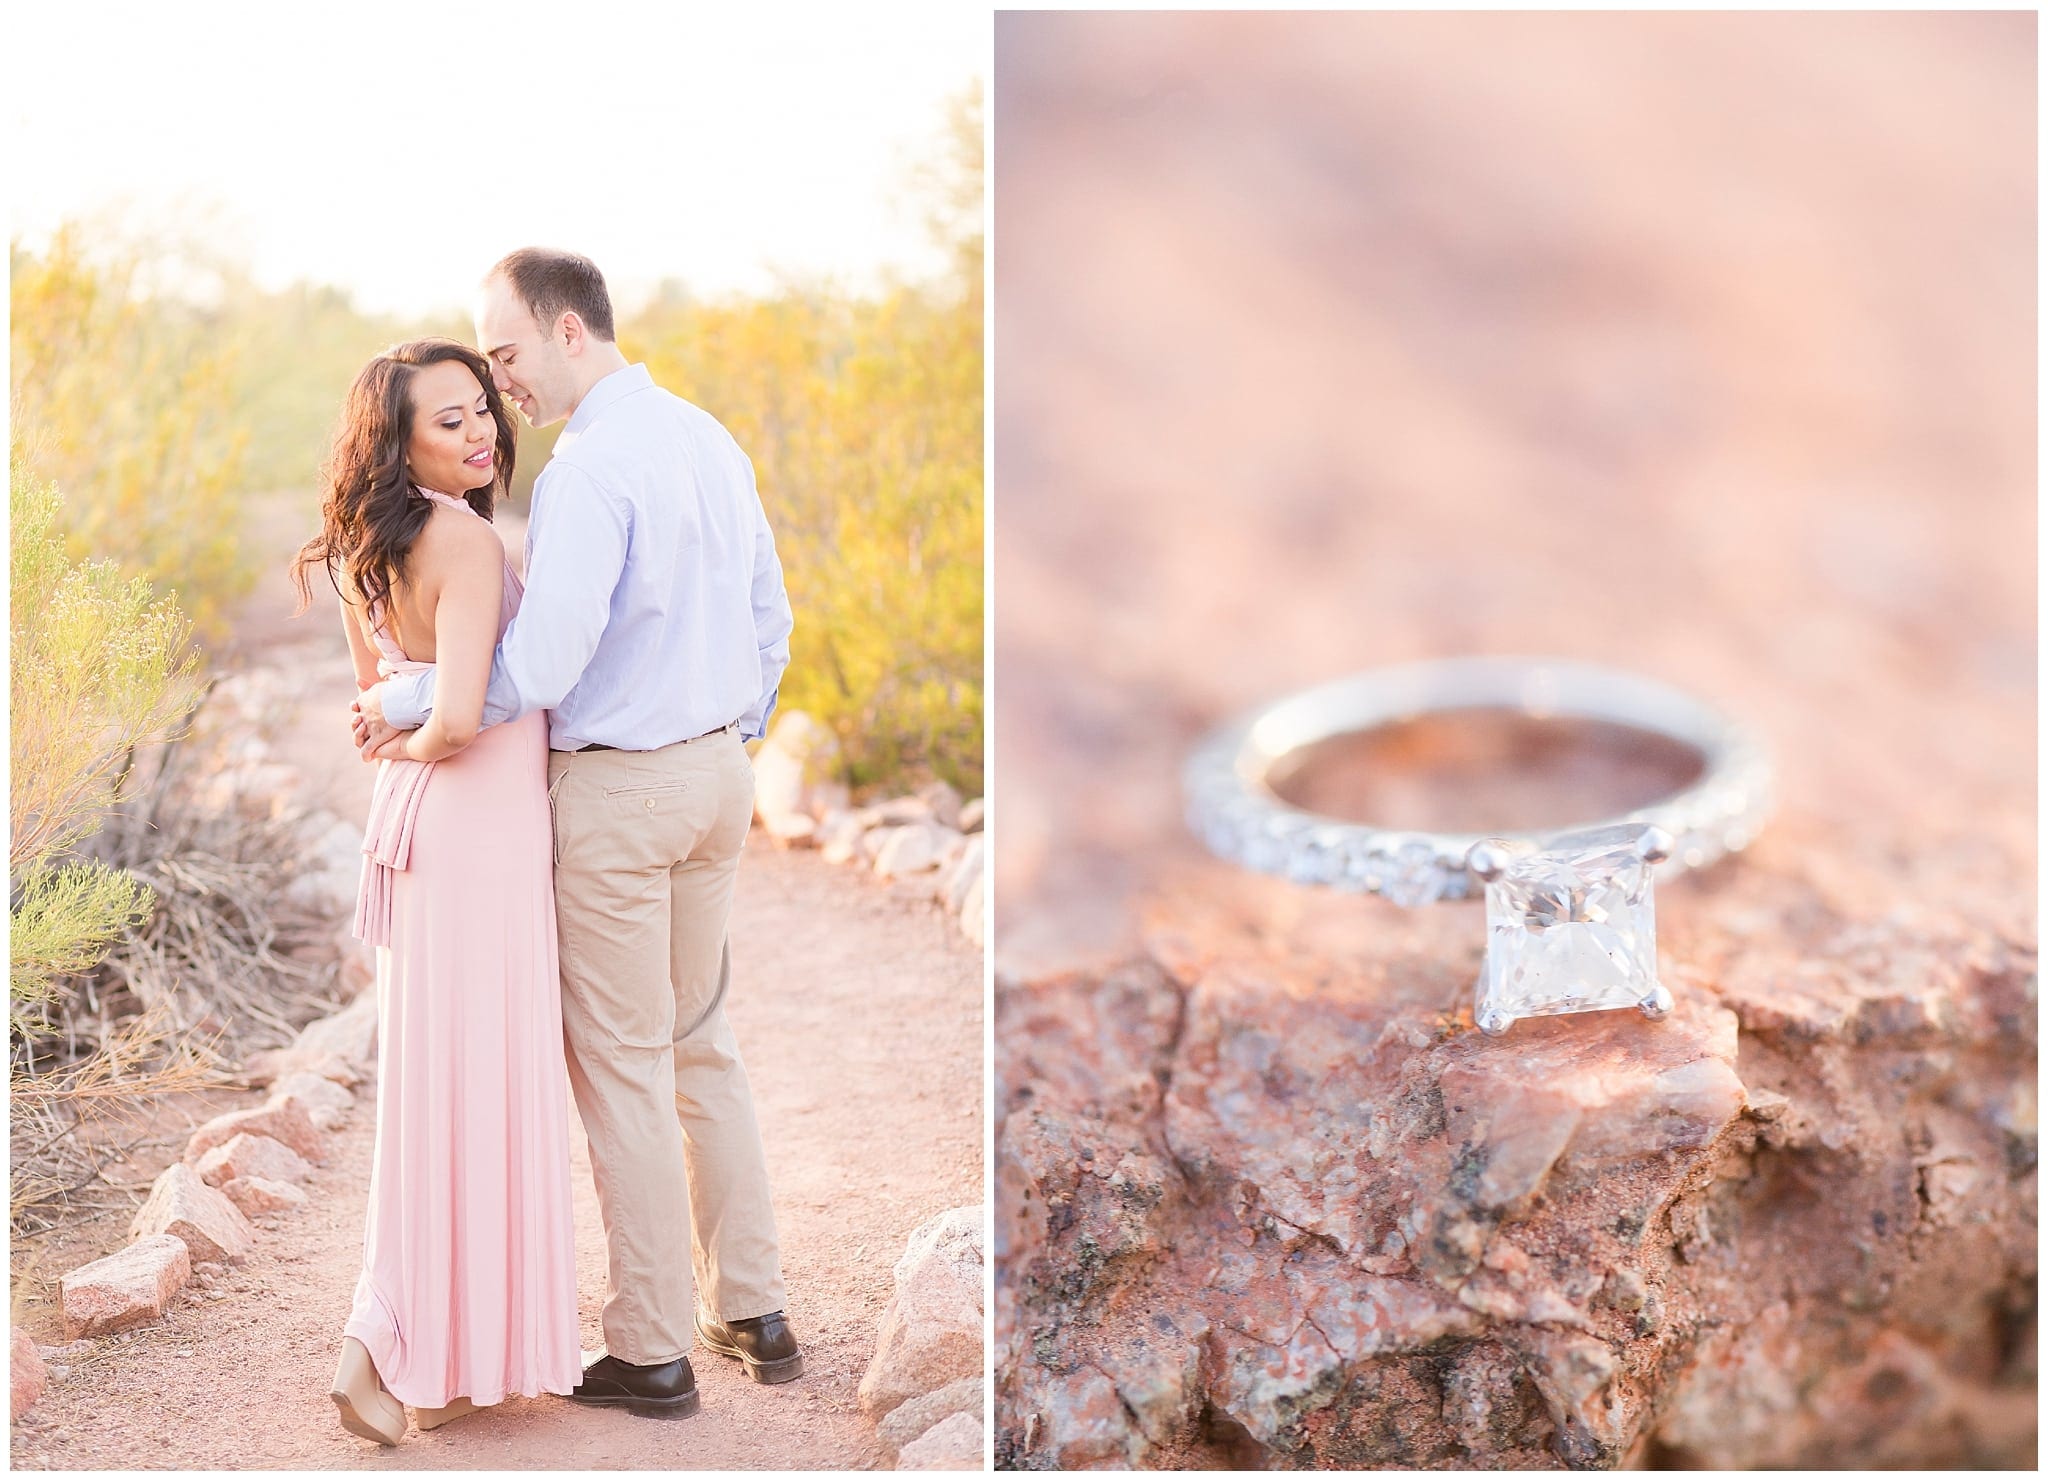 Couple walking, blush dress, blue collared shirt, engagement ring